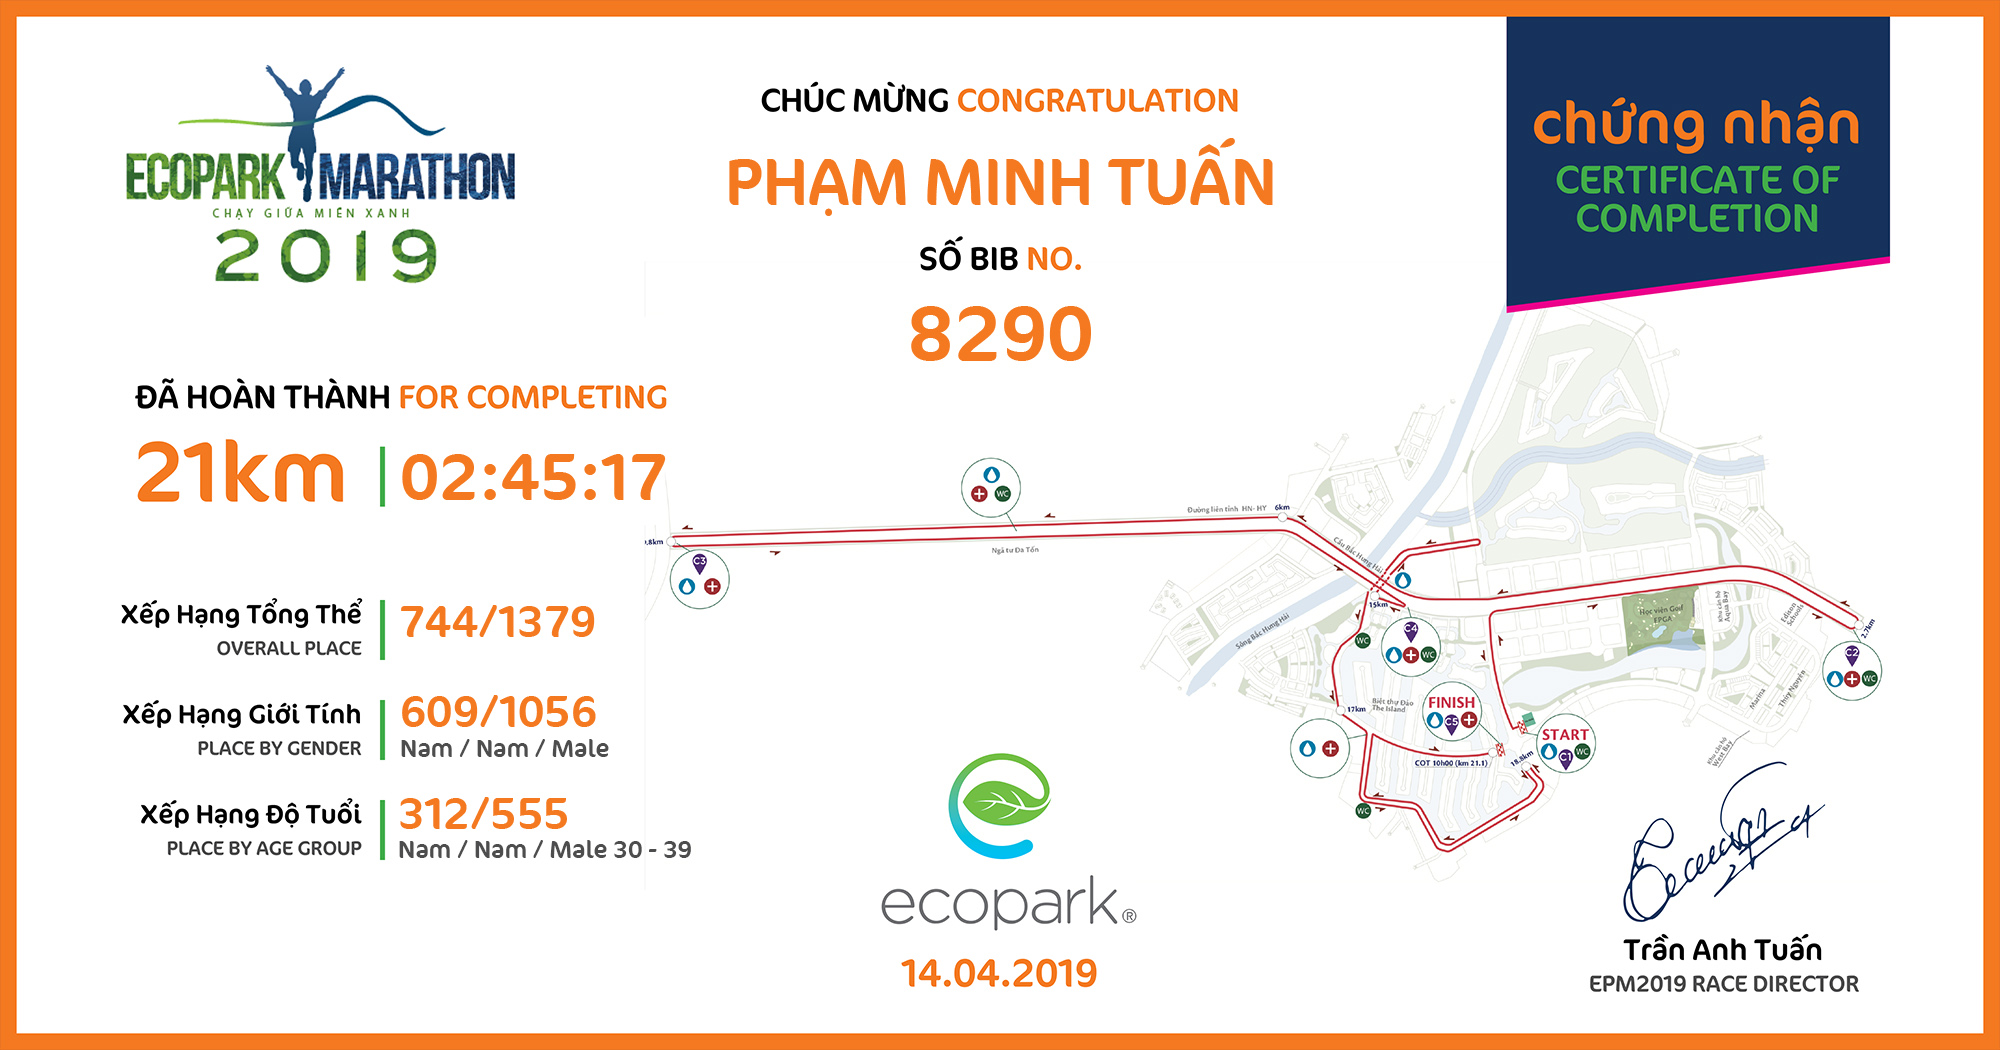 8290 - Phạm Minh Tuấn